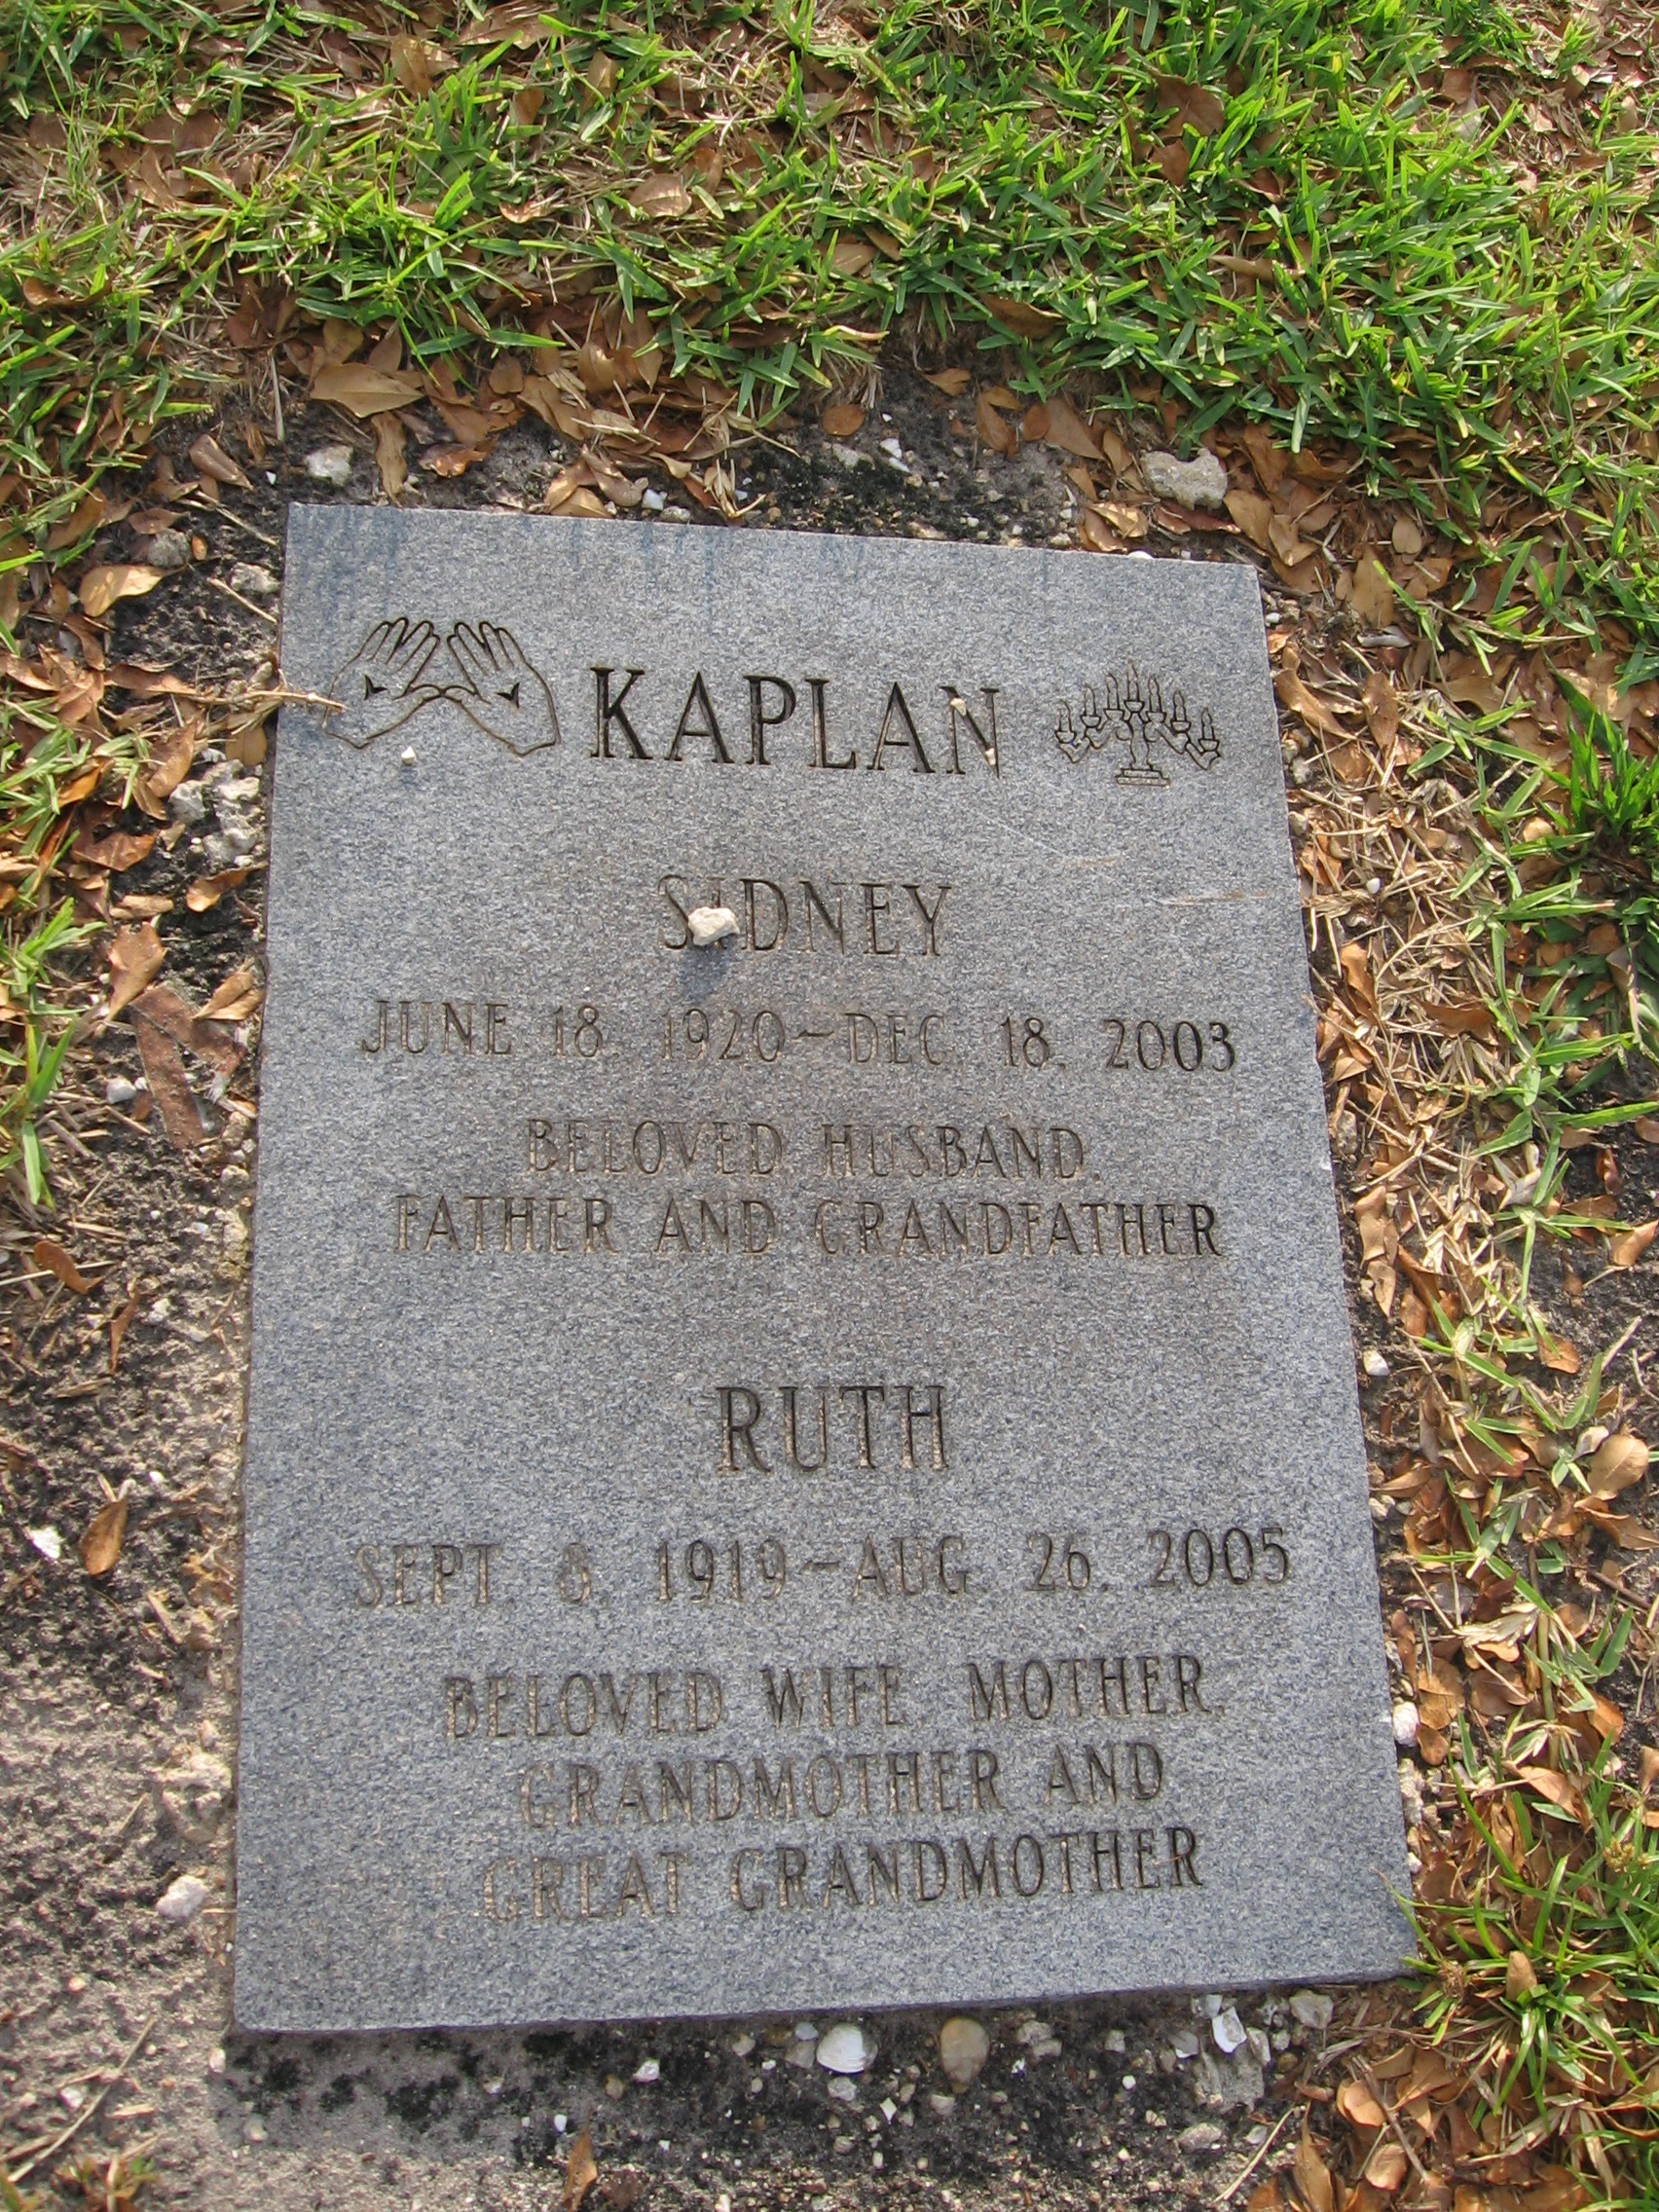 Ruth Kaplan